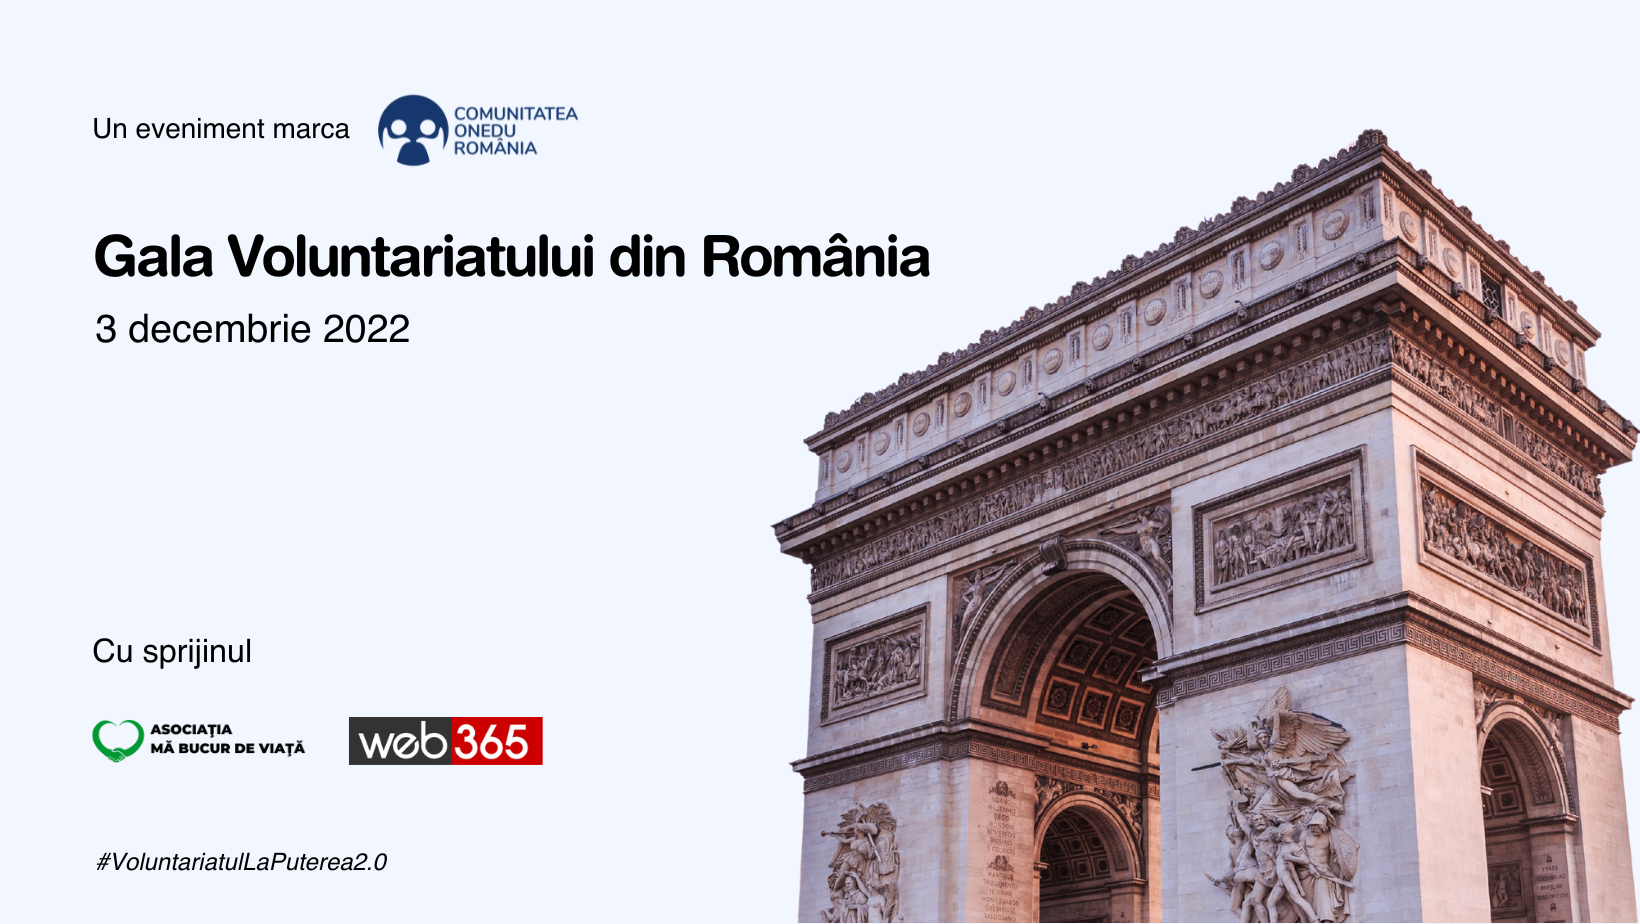 START NOMINALIZĂRI la Gala Voluntariatului din România. Comunitatea ONedu România își propune să adune sute de voluntari din toată țara